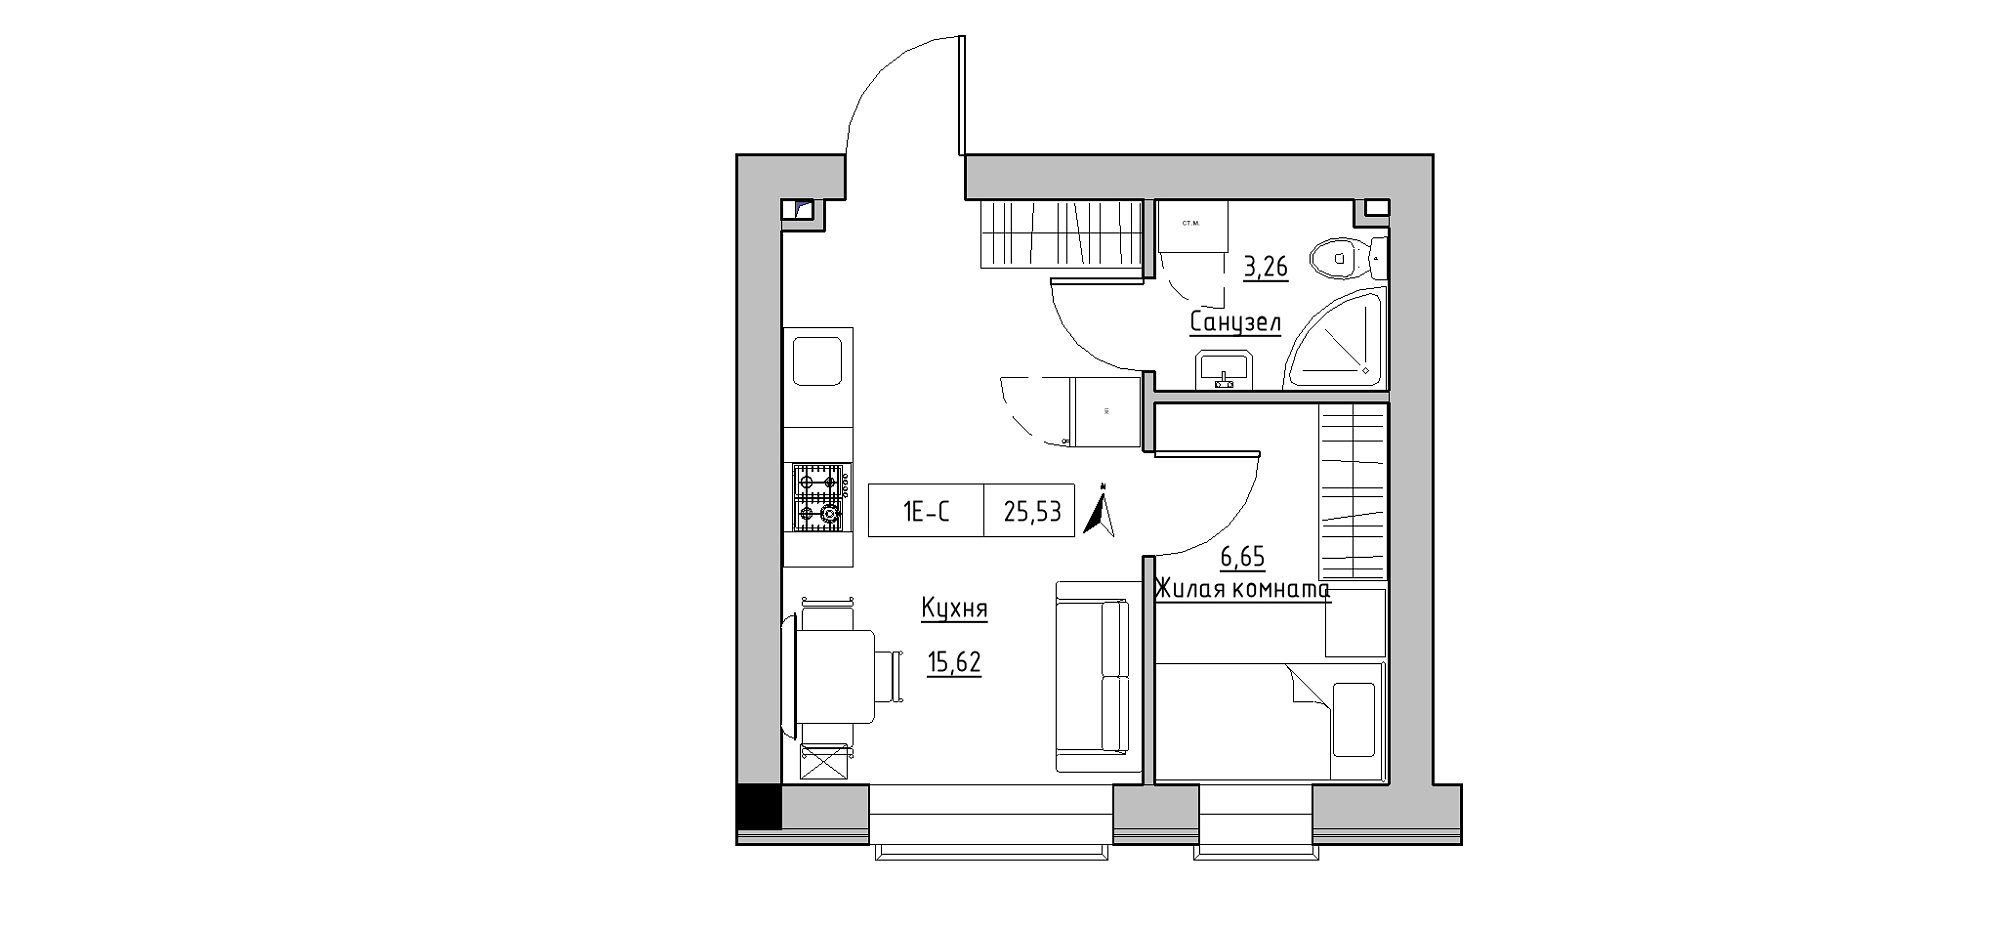 Планировка 1-к квартира площей 25.53м2, KS-020-04/0004.